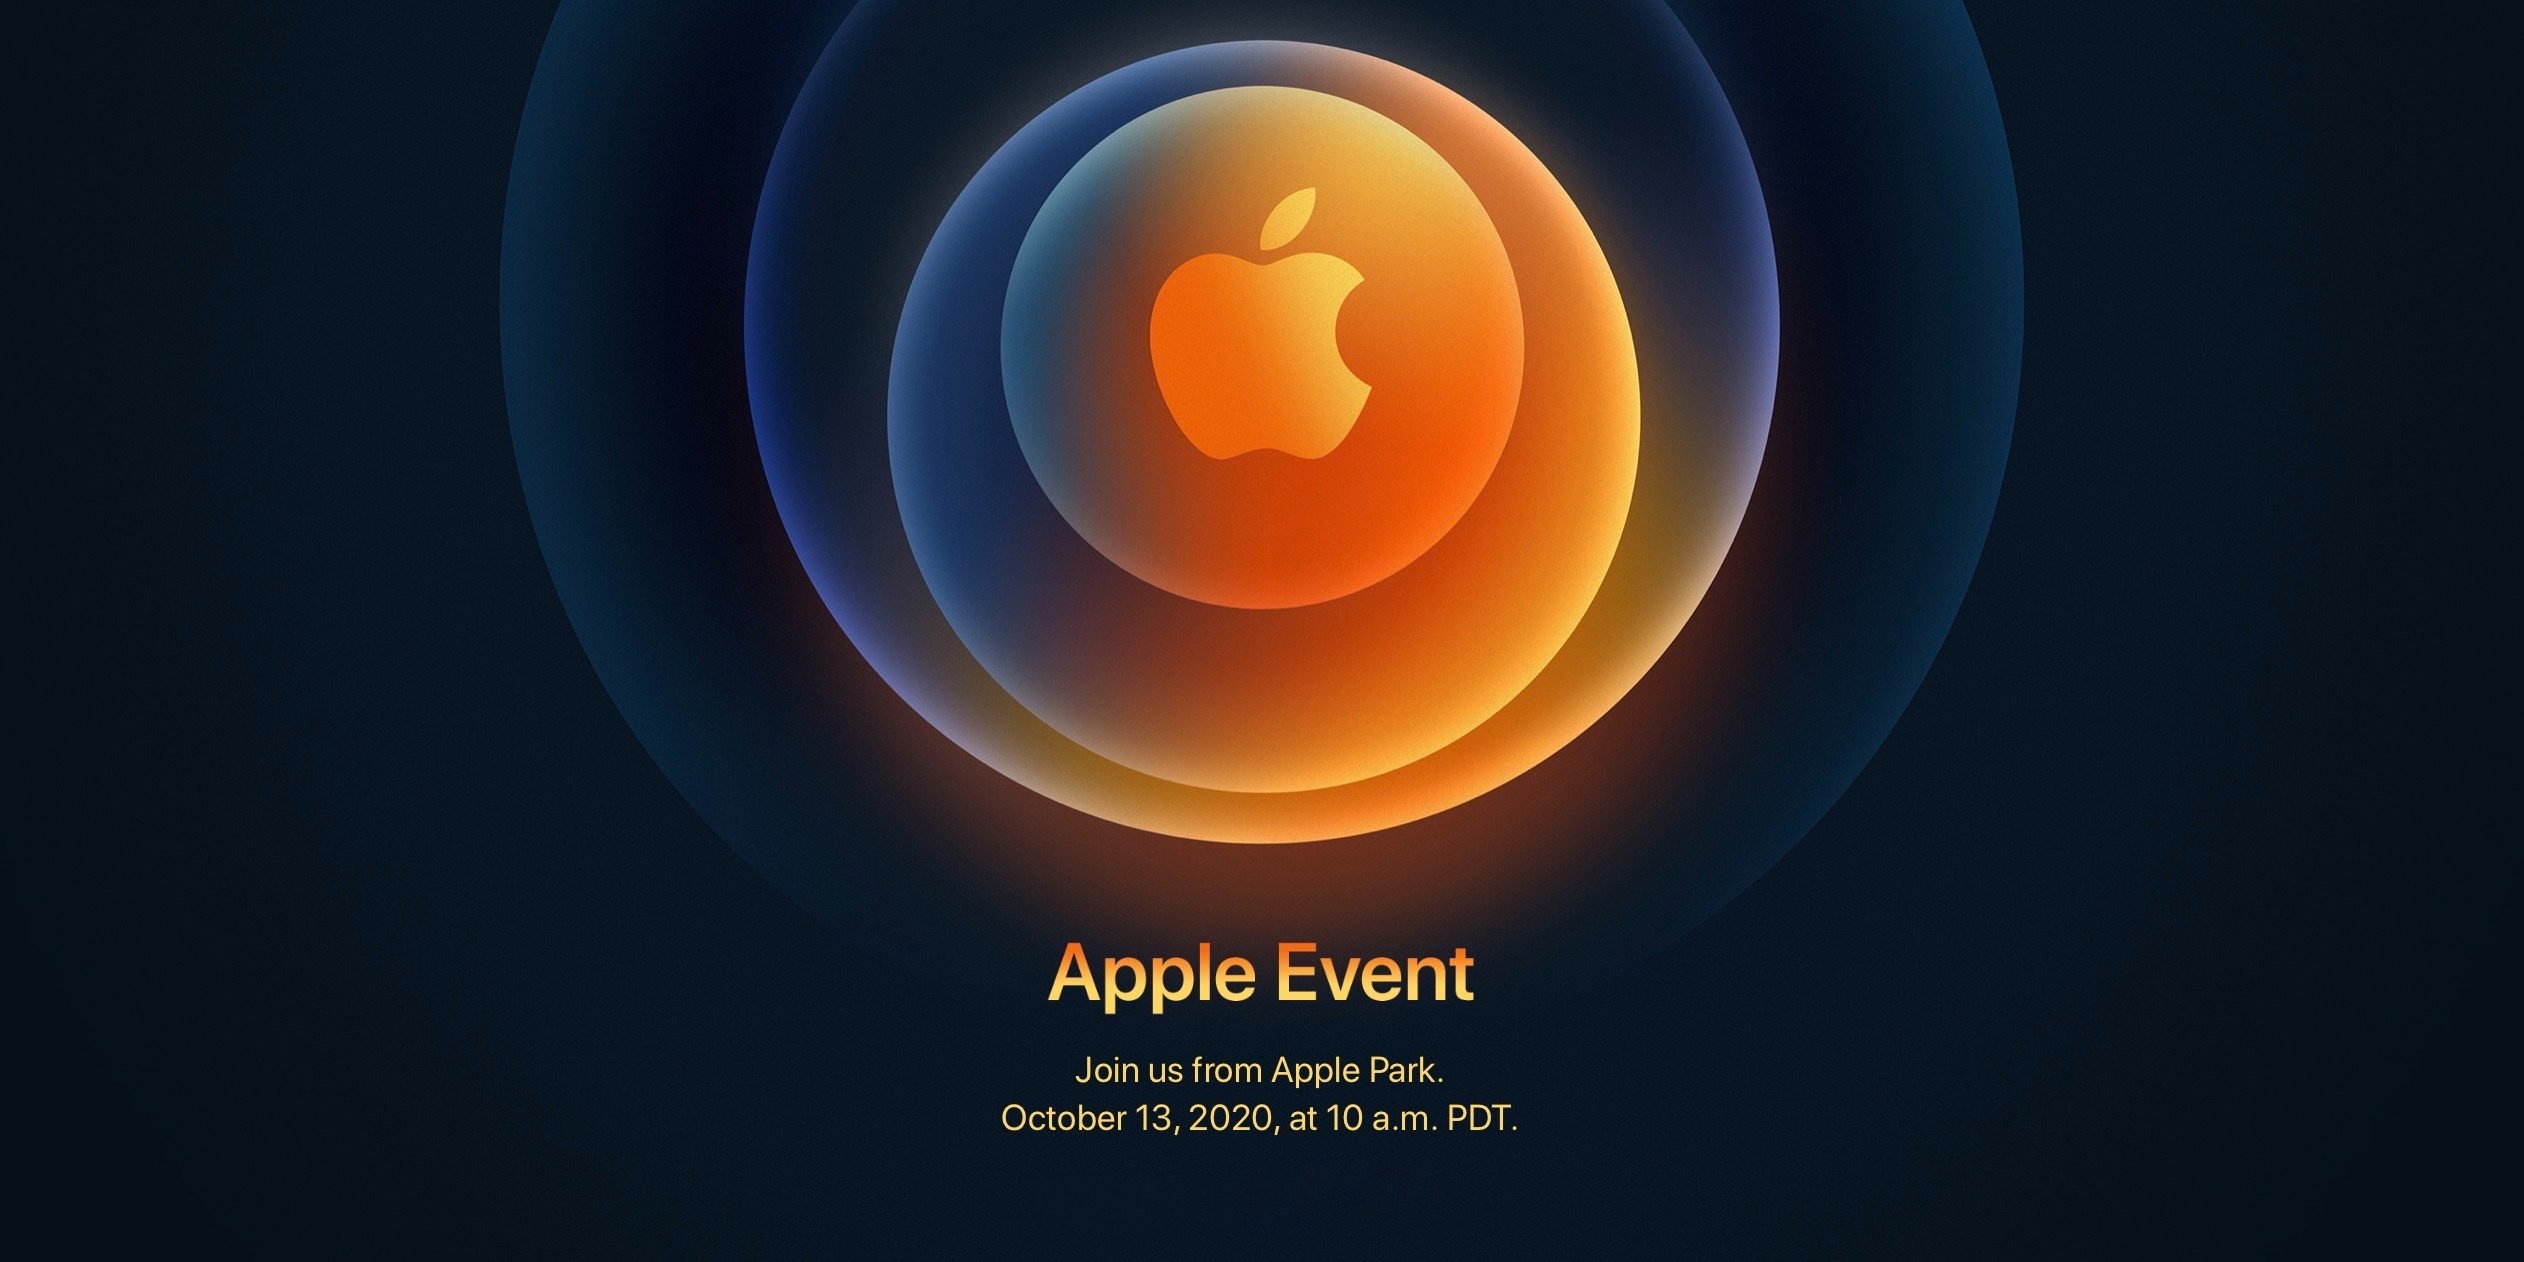 Apple xác nhận sự kiện ra mắt iPhone 12 ‘Hi, Speed’ vào ngày 14/10 sắp tới